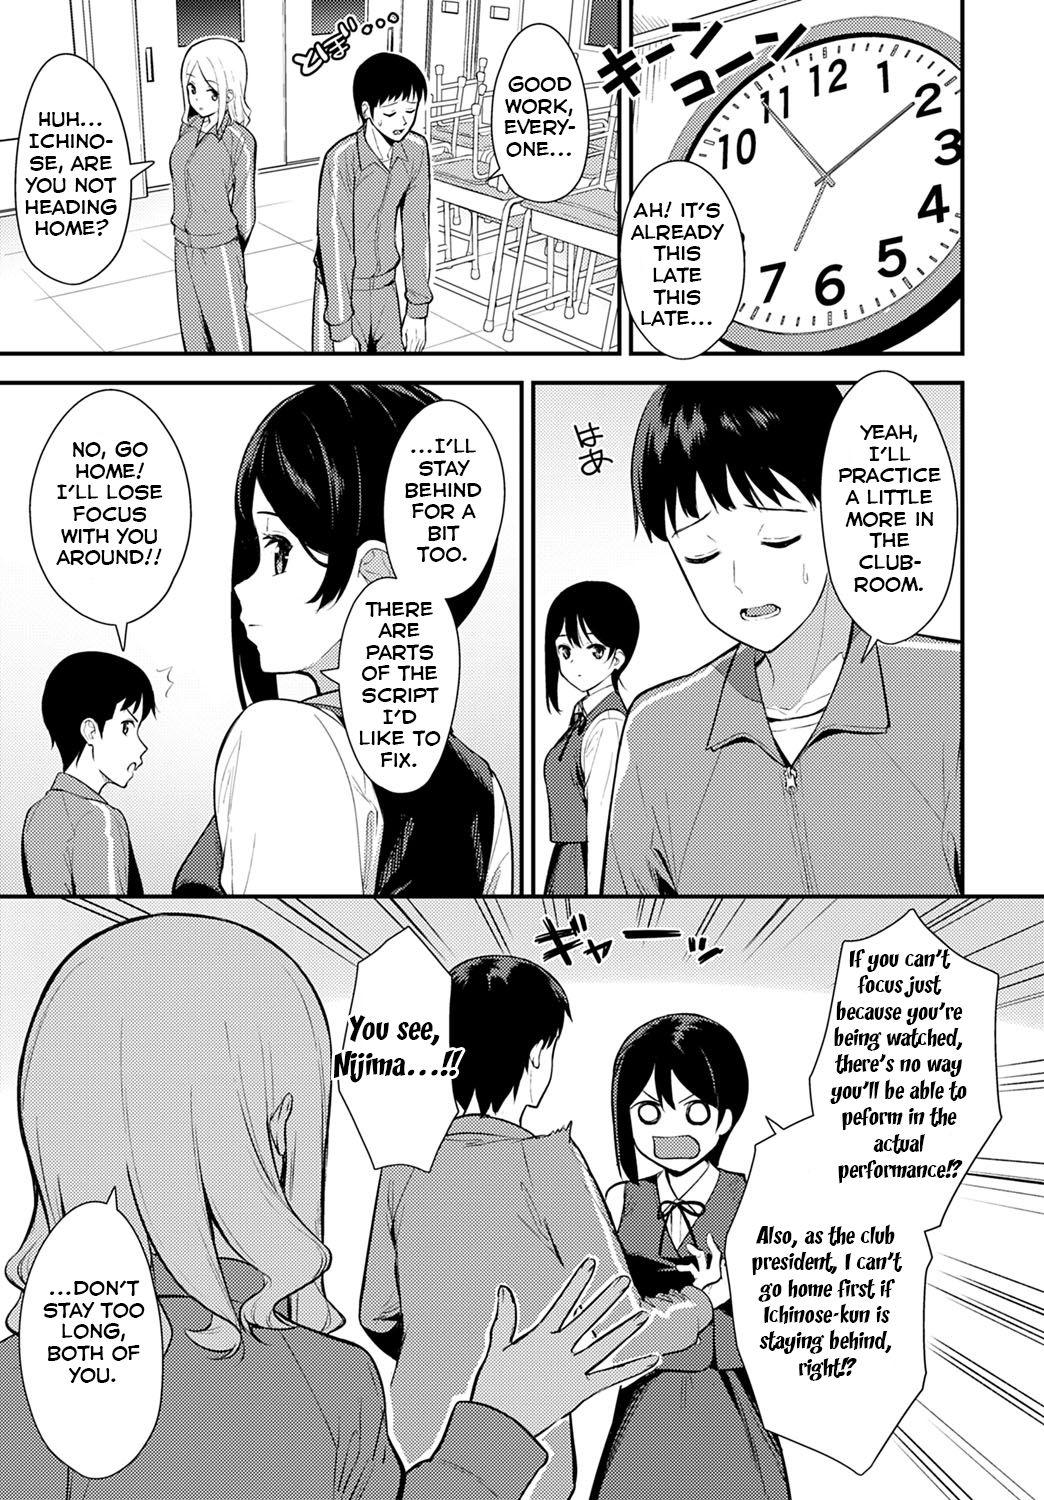 Boots Makuai Anime - Page 3